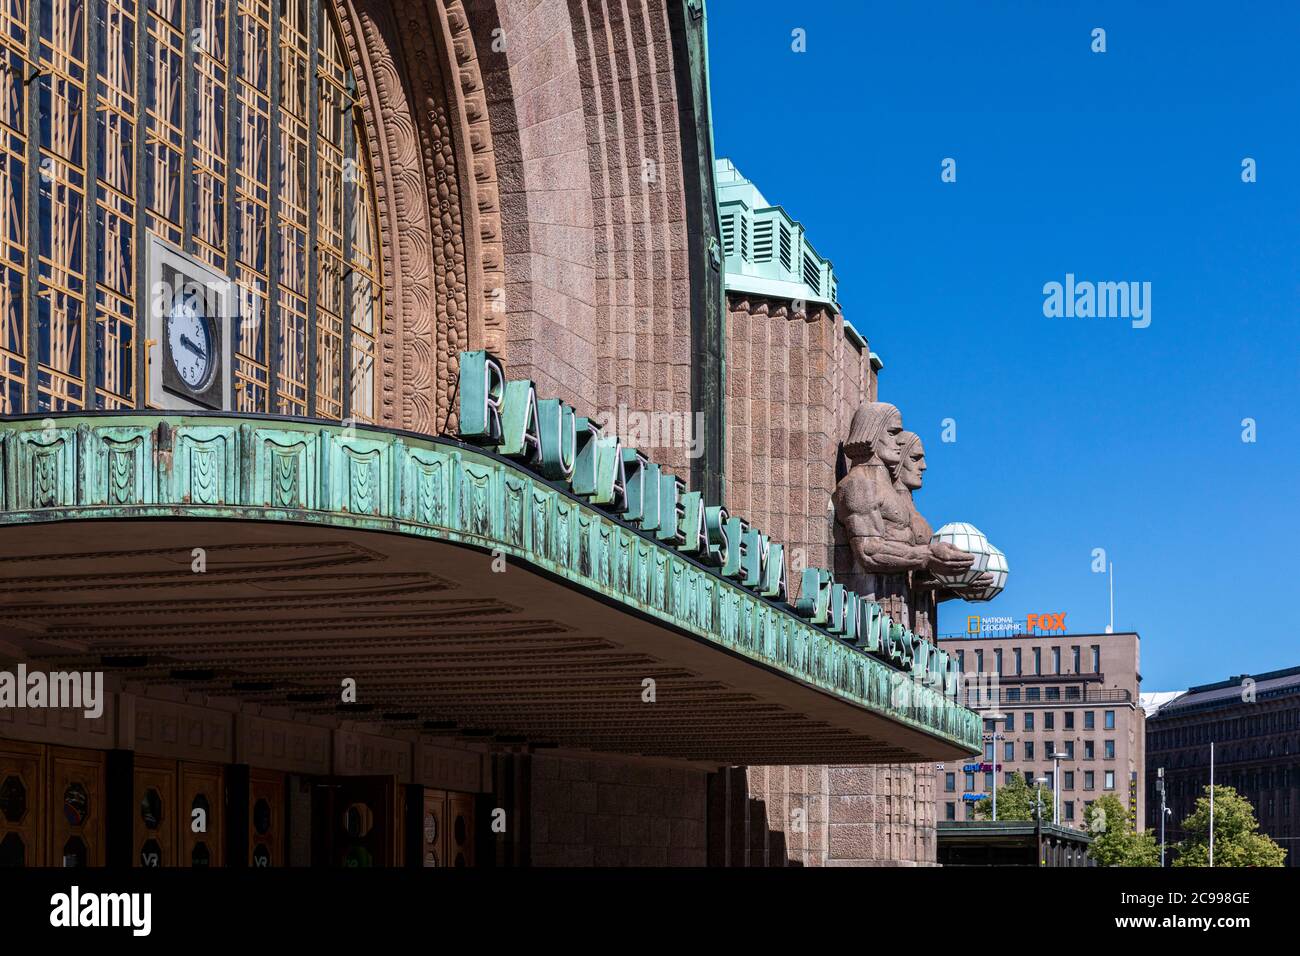 Helsinki, Finlandia - 26 de julio de 2020: La estación principal de tren de Helsinki es un hito internacional. La fachada es mejor reconocida de cuatro estatuas de granito: tw Foto de stock